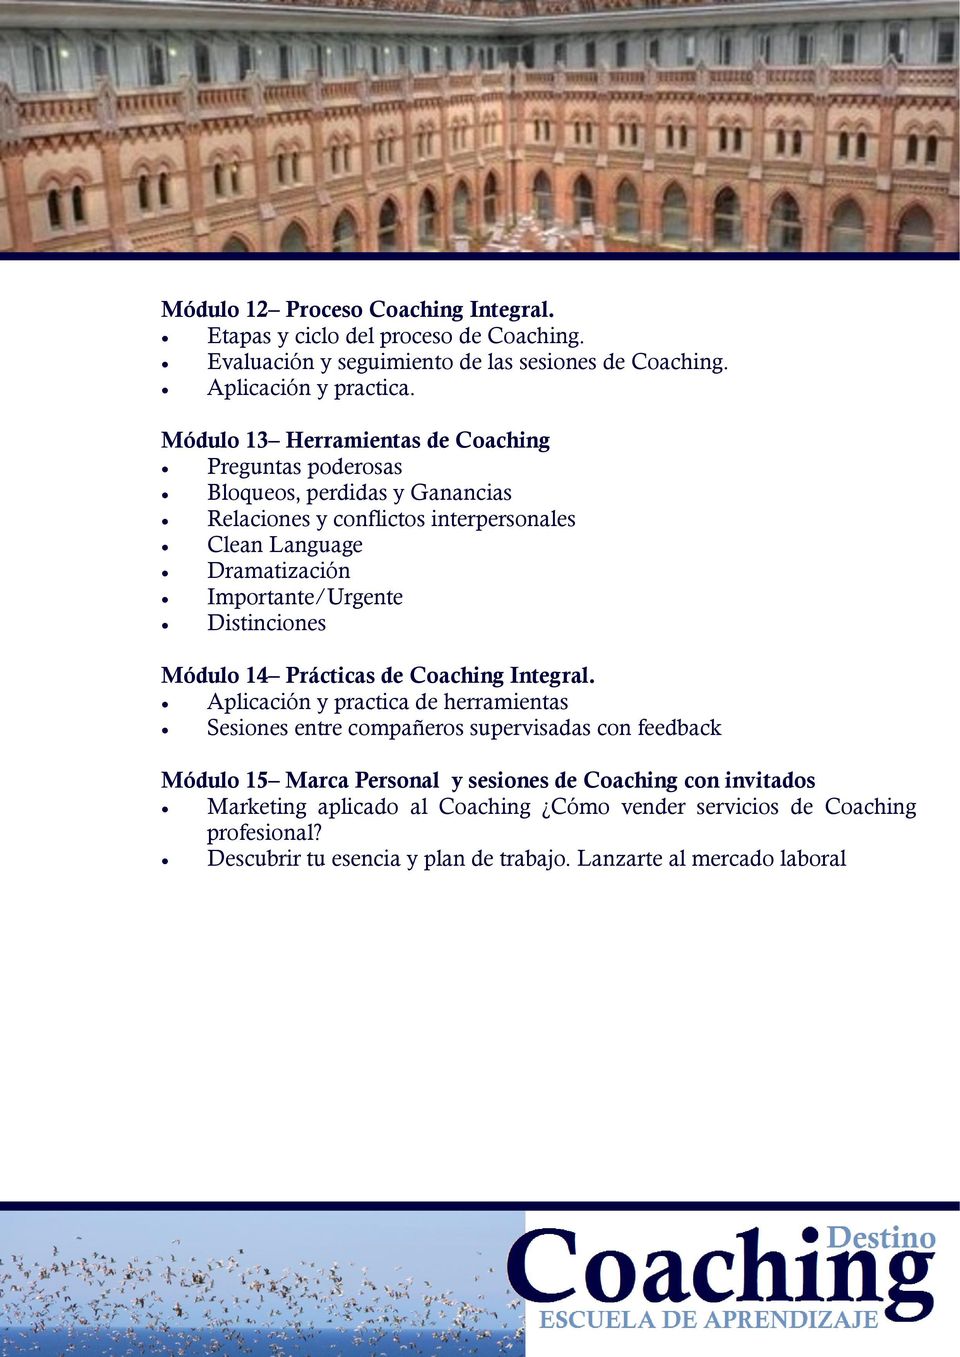 Importante/Urgente Distinciones Módulo 14 Prácticas de Coaching Integral.